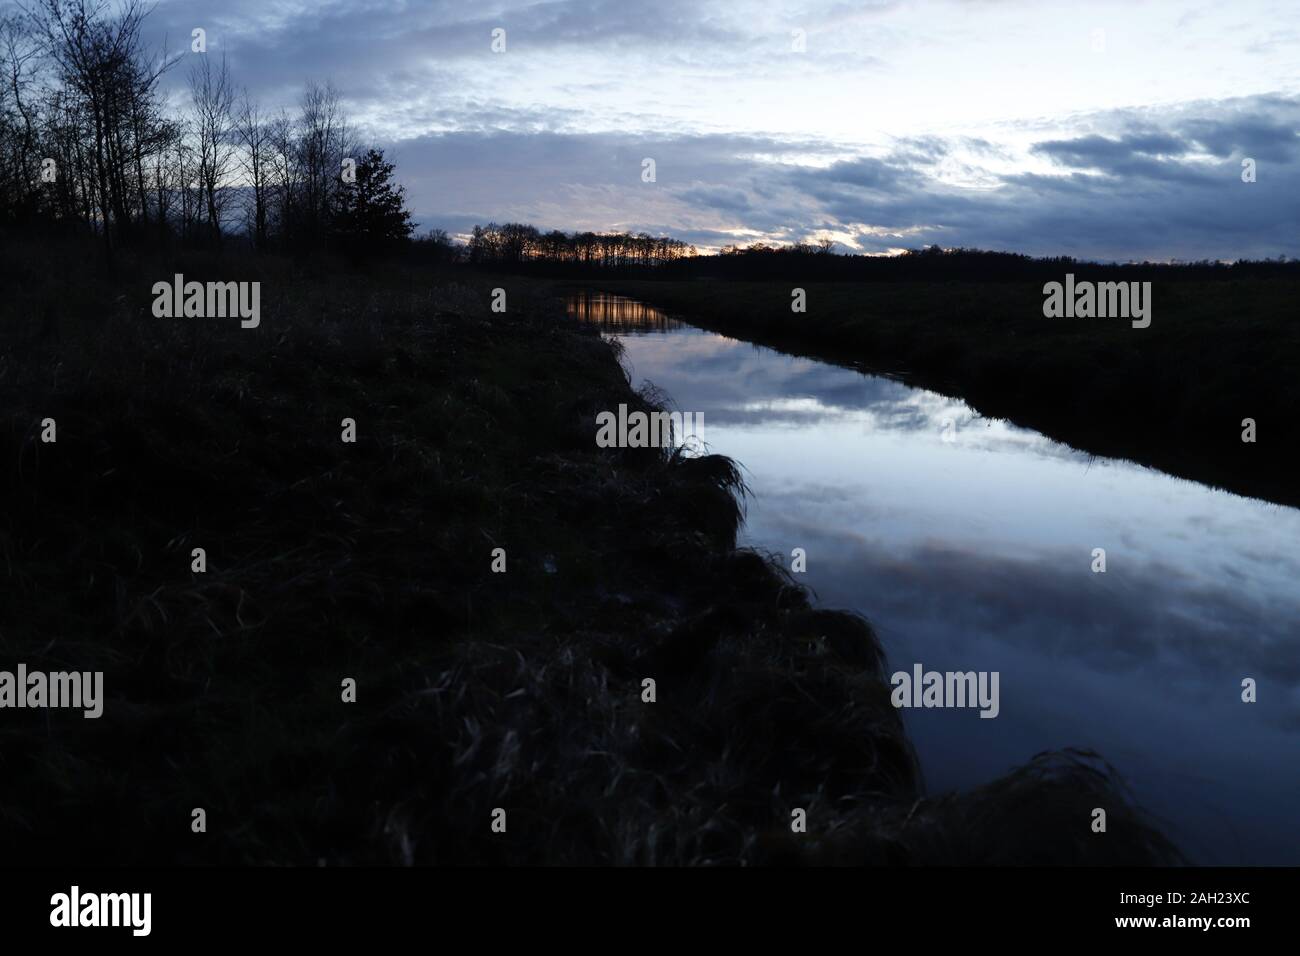 Mittelradde, Ahmsen, Lahn, Fluss Dämmerung, Dezember, Spiegelung, Wasser, Moor Stock Photo